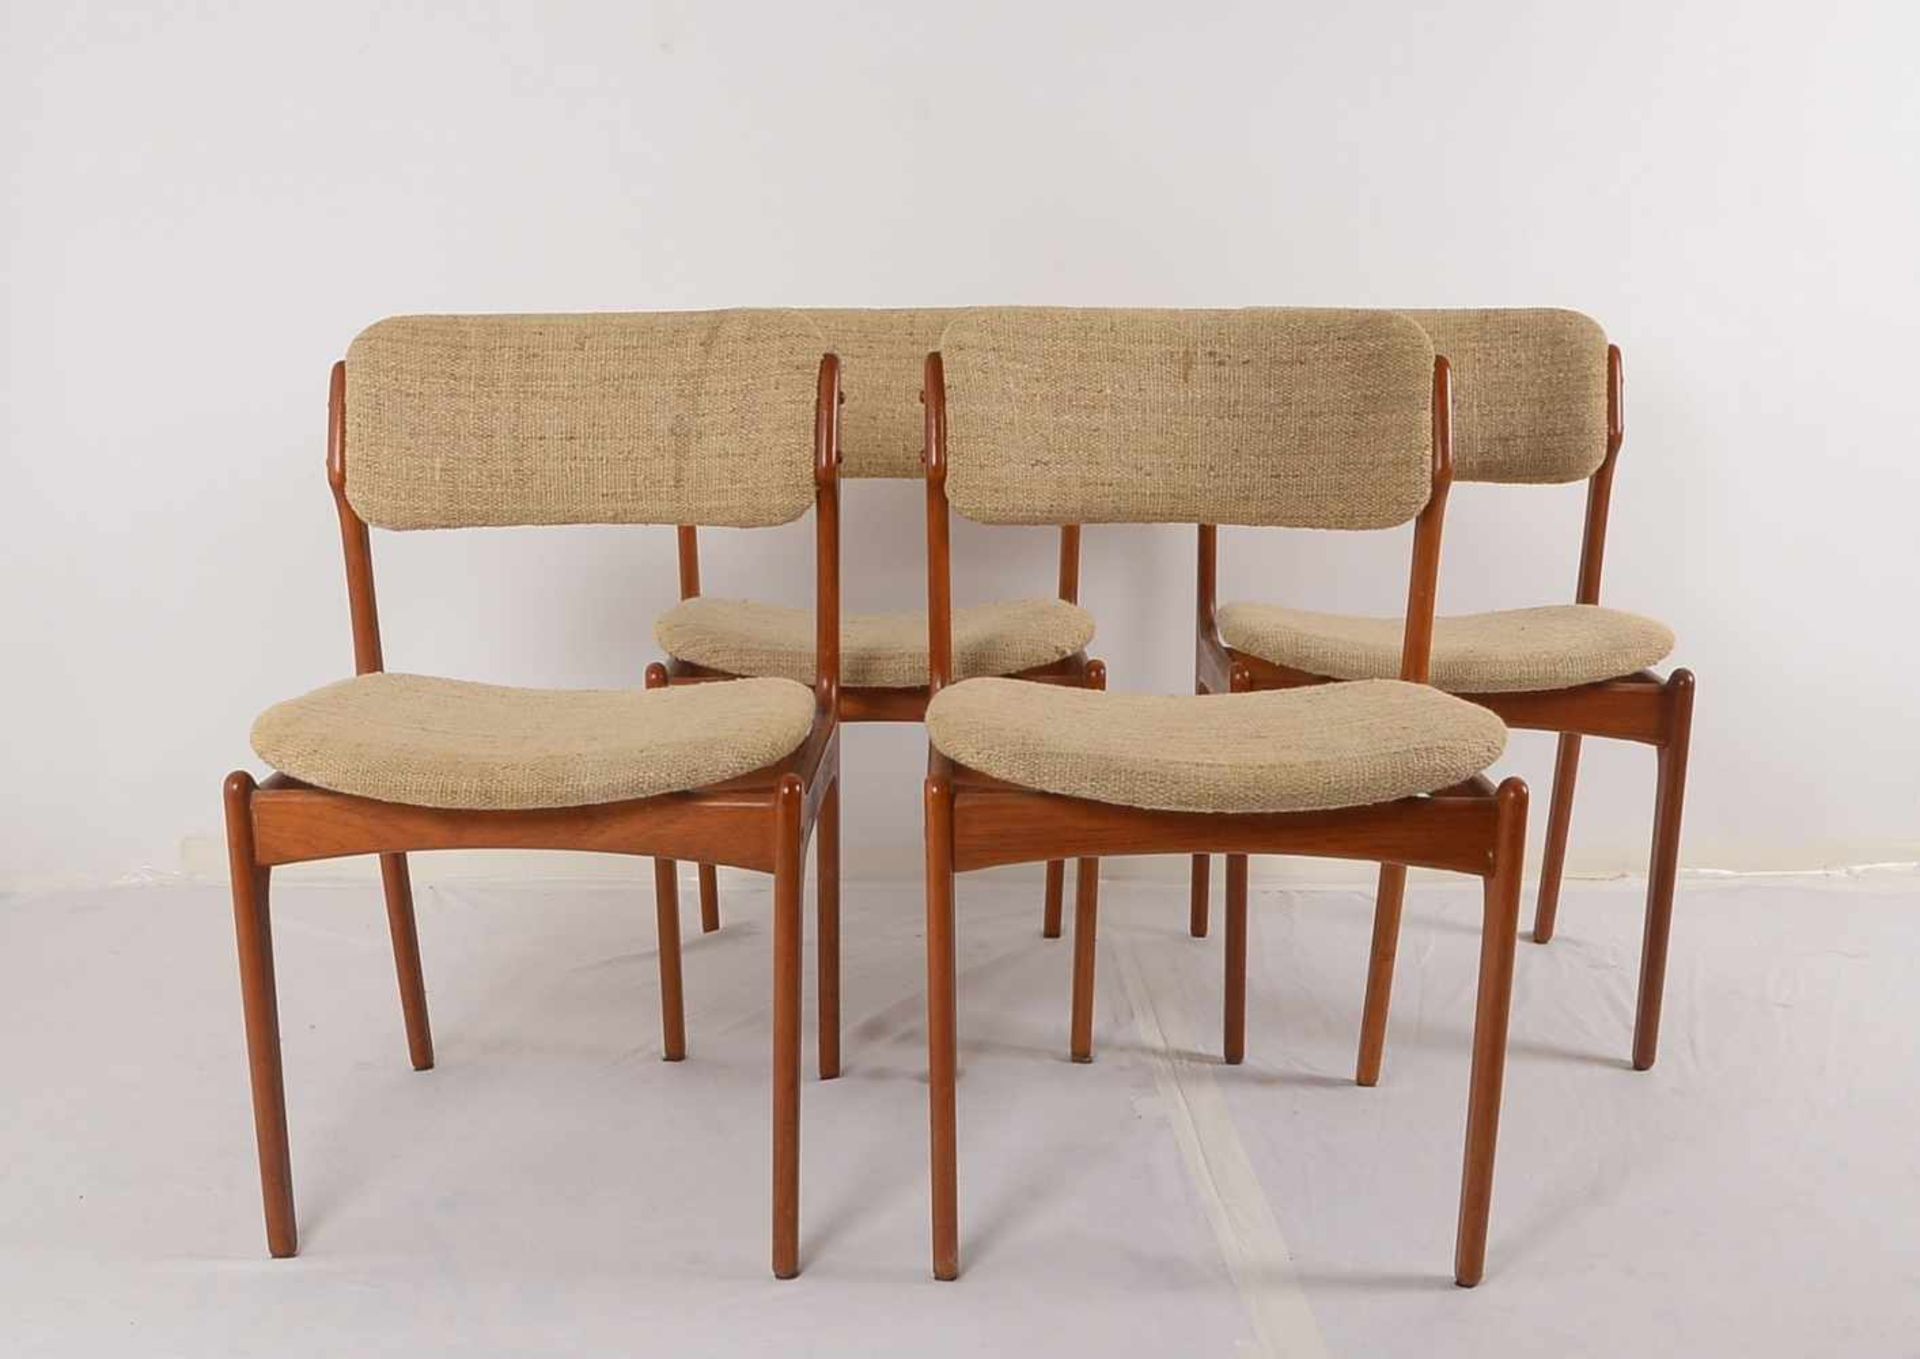 Satz Stühle, Dänemark, Teakholz, mit beigefarbenem Polsterstoff; Höhe 80 cm, Breite 48 cm, - Bild 2 aus 2